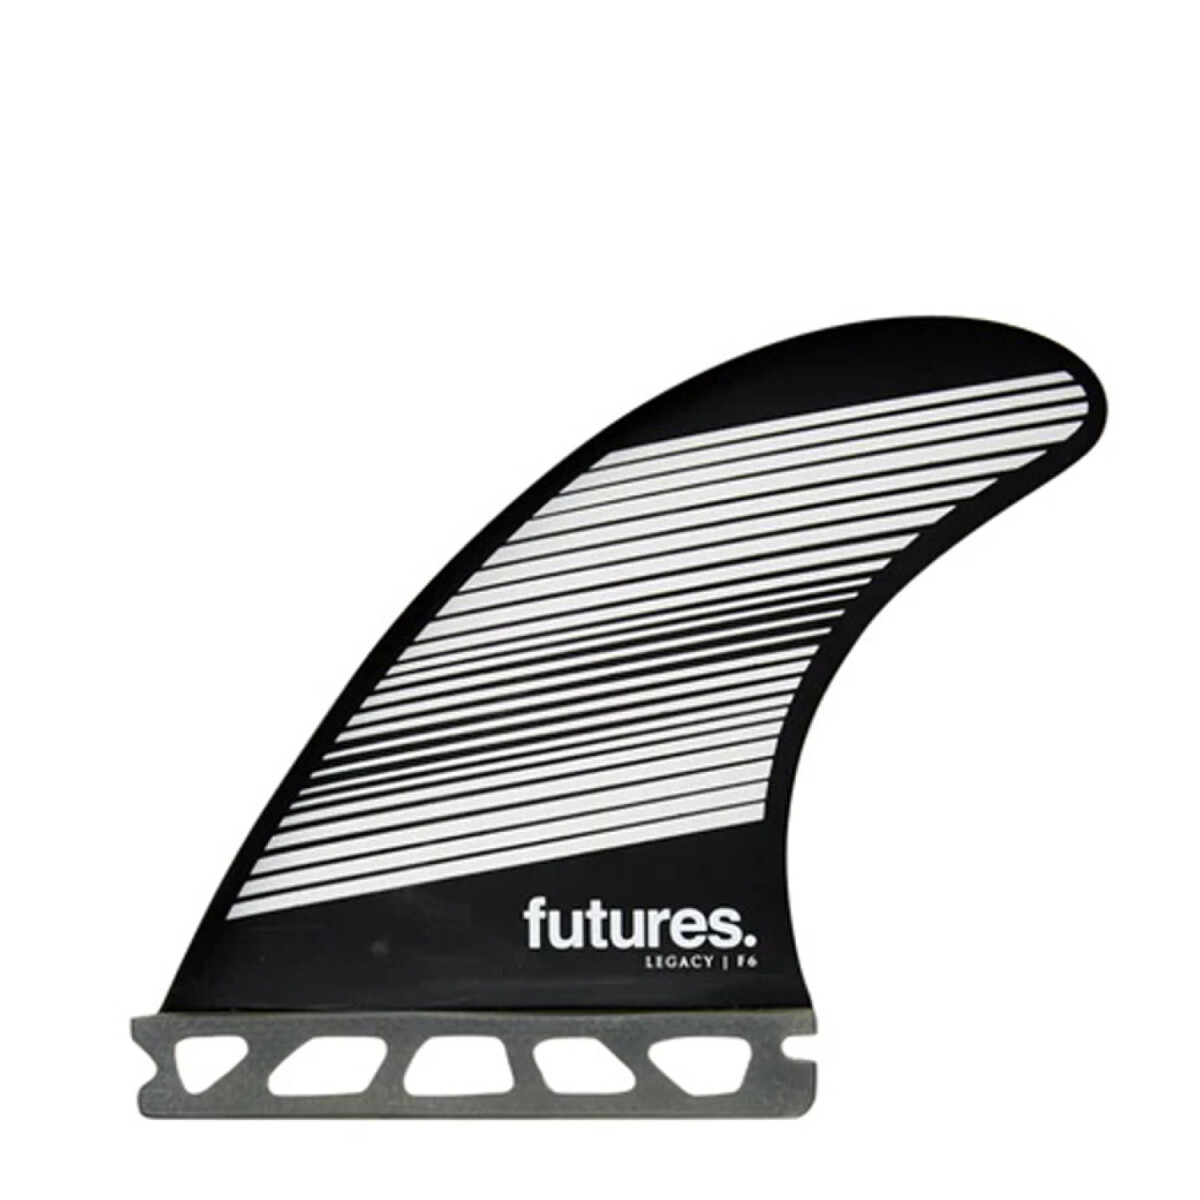 Quilla Futures Legacy F6 Honeycomb M - Quad 